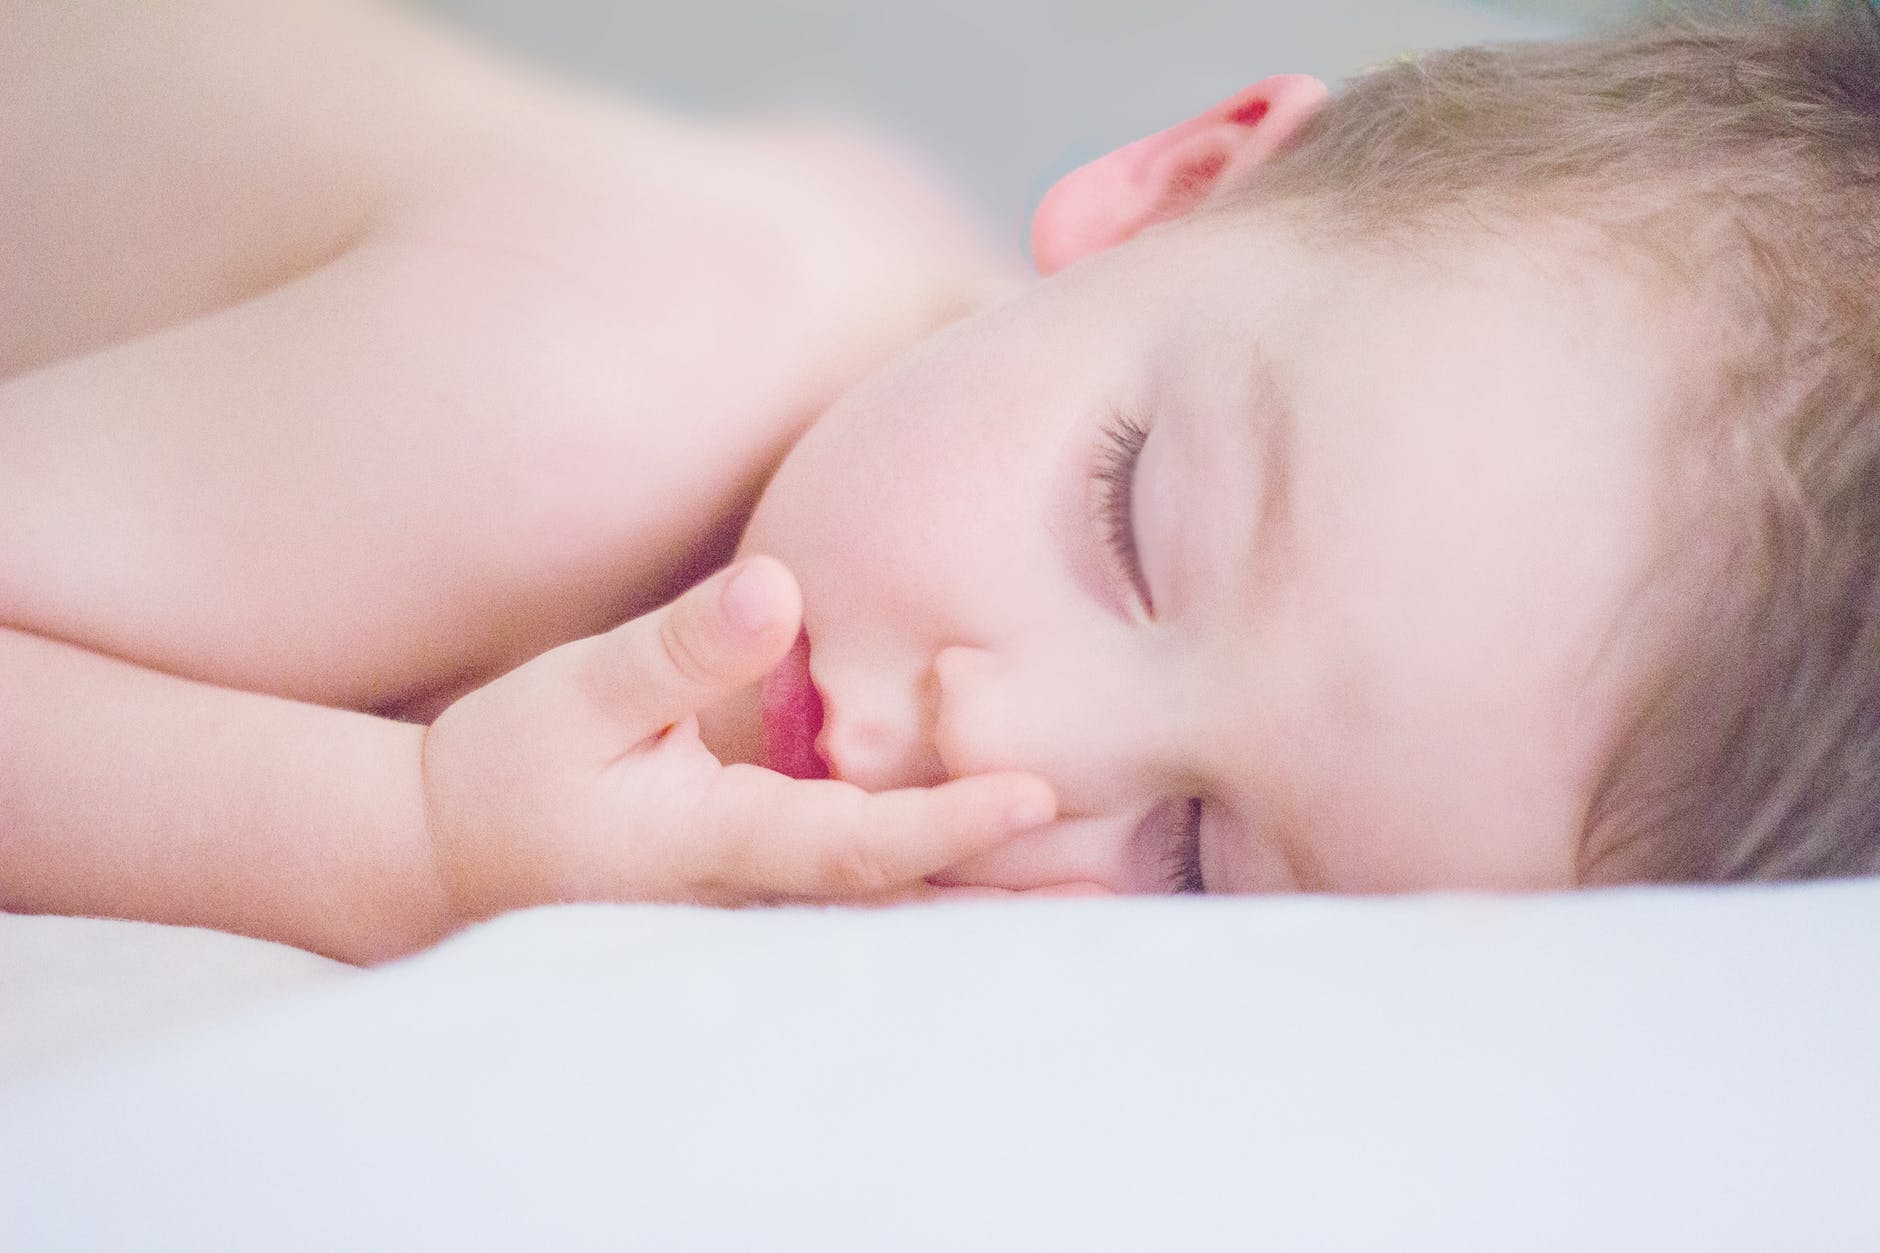 Εσύ γνωρίζεις πώς πρέπει να κοιμάται το μωρό σου;